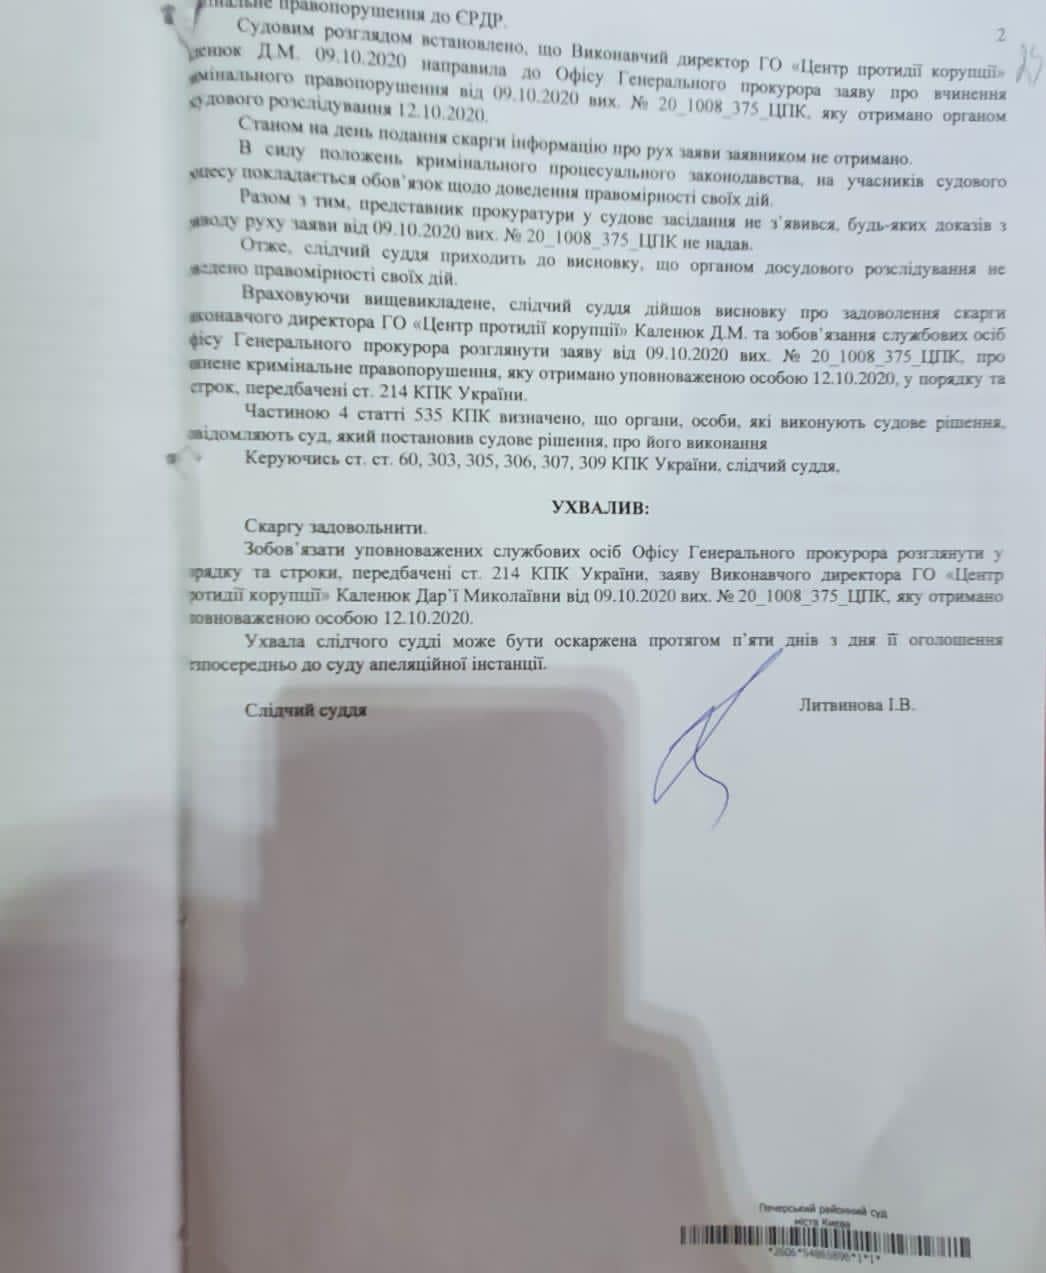 ЦПК: Суд обязал Венедиктову открыть дела против Дубинского и Деркача. Дубинский отрицает 